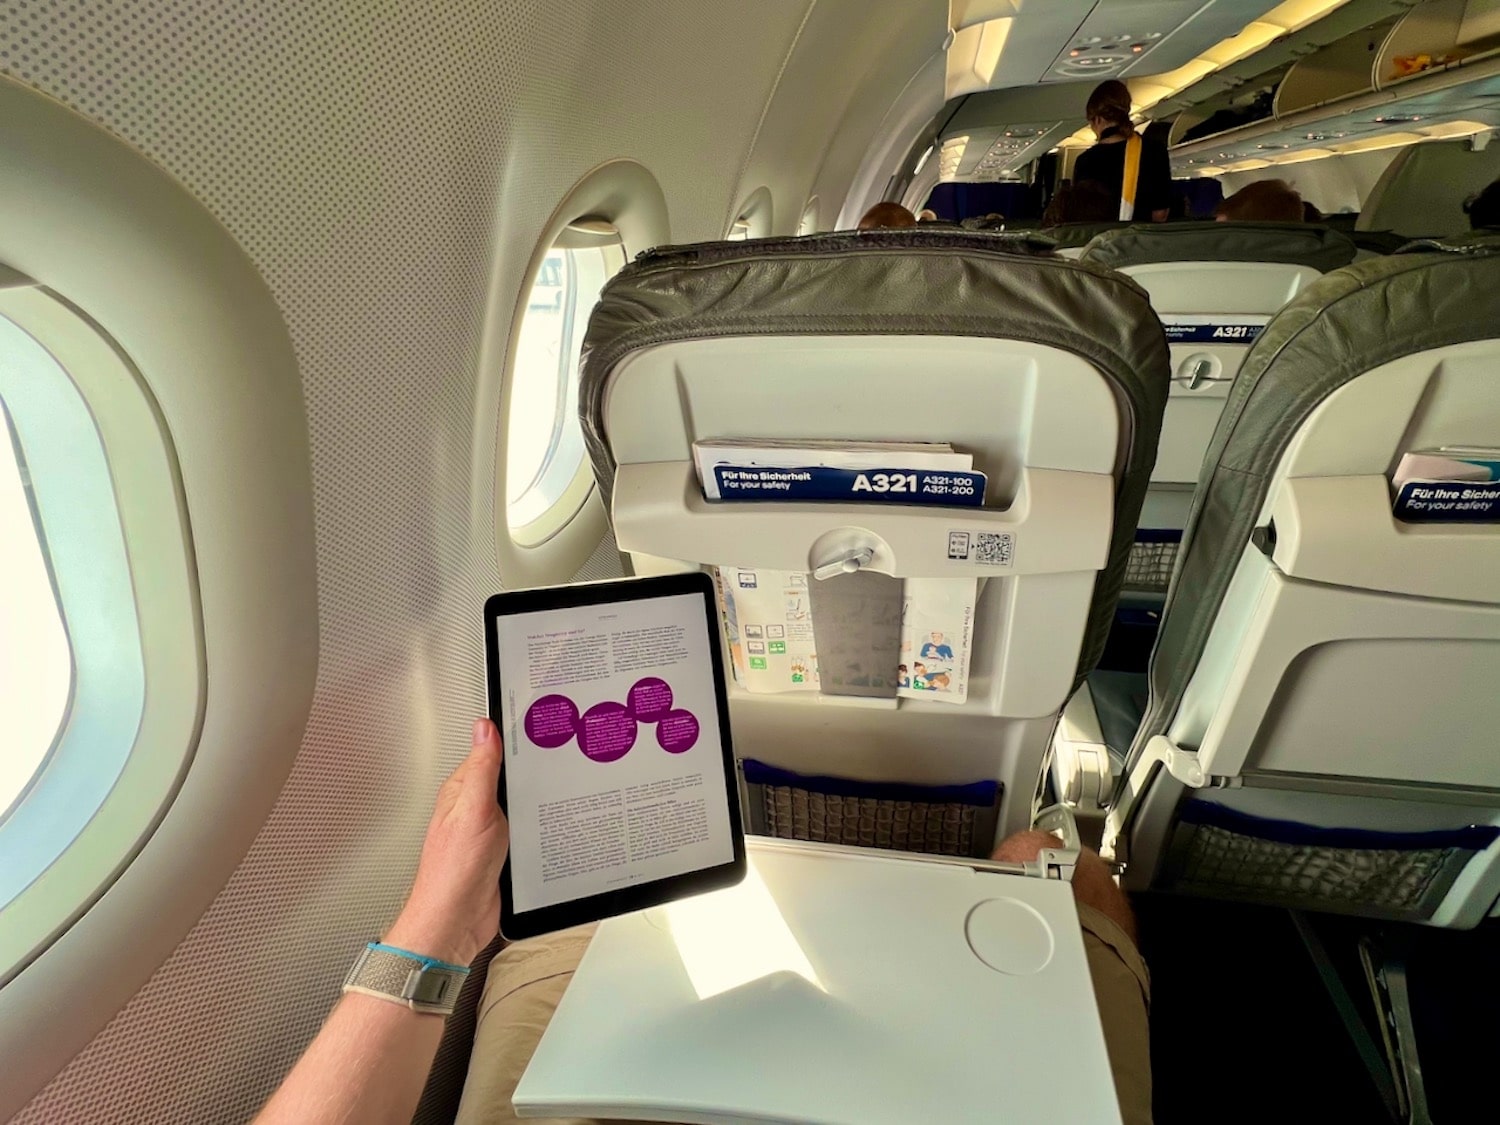 In het vliegtuig is een iPad gewoonweg ideaal als eBook-lezer - op de laatste reis las ik zoveel meer op de tablet dan ik normaal in conventionele boeken lees. De tekst is simpelweg beter toegankelijk op de iPad. En bij twijfel kun je gewoon verder lezen op je iPhone. Foto: Sascha Tegtmeyer iPad als eBook-lezer Tips Ervaringenrapport